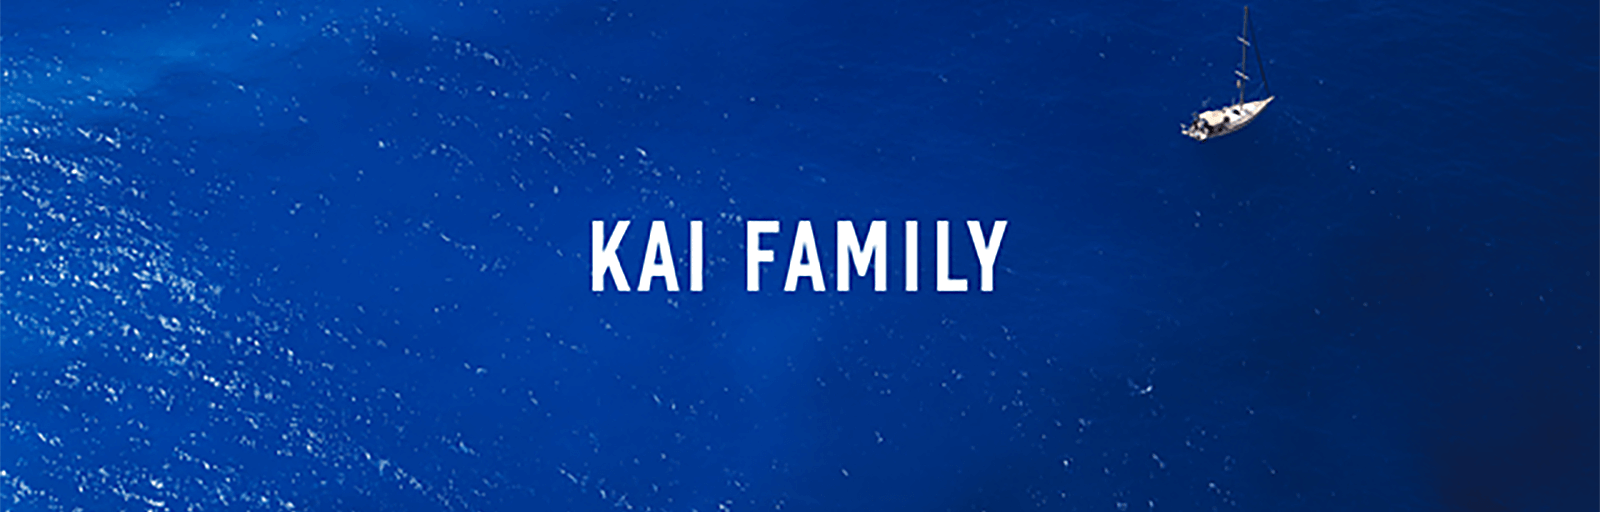 KAI FAMILY